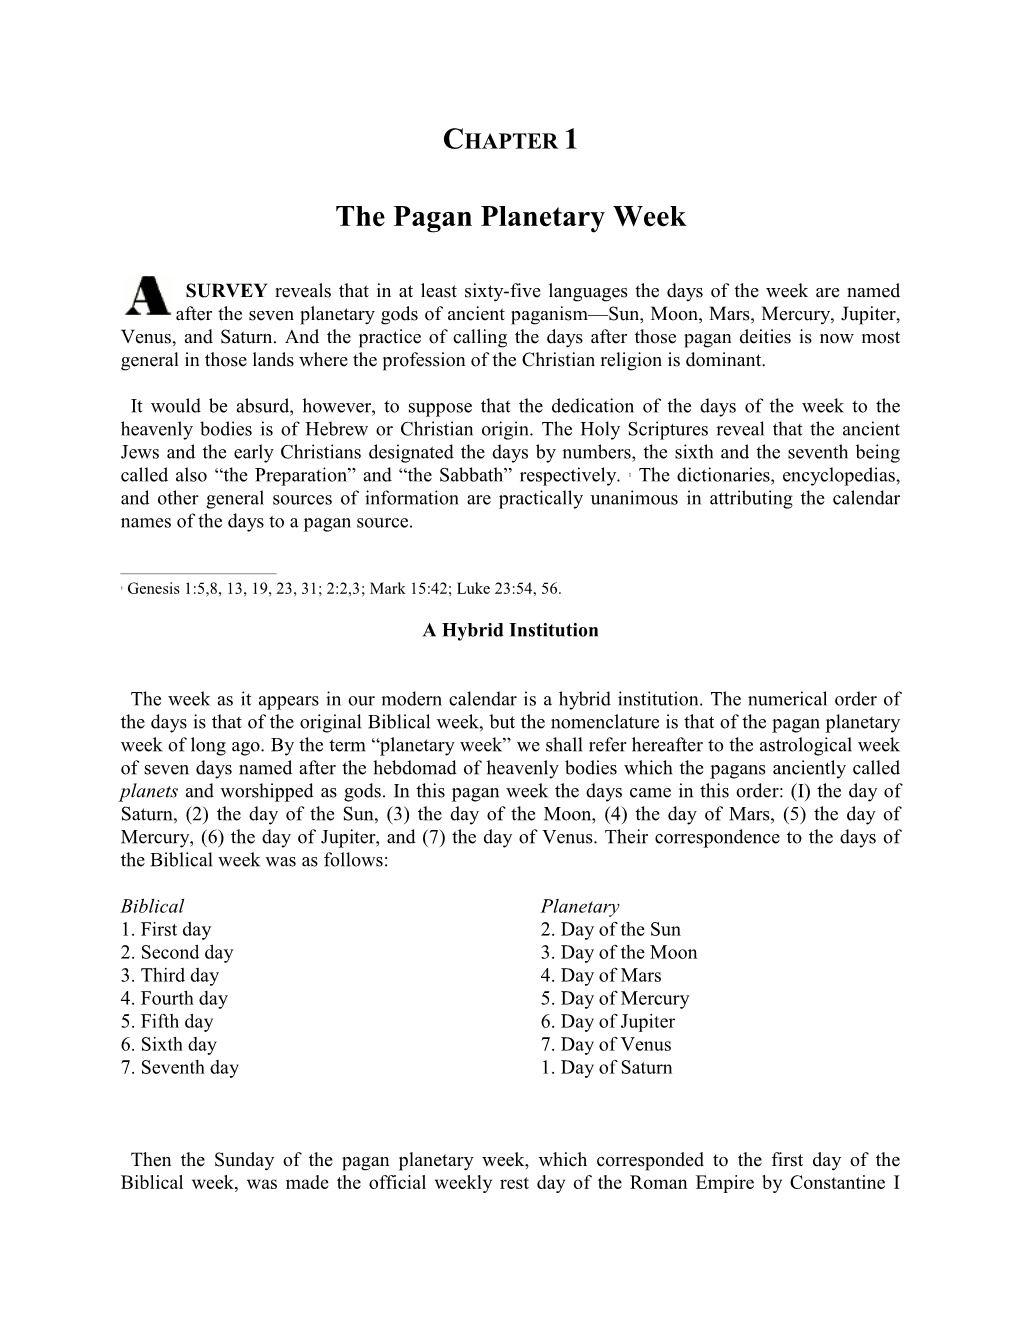 The Pagan Planetary Week